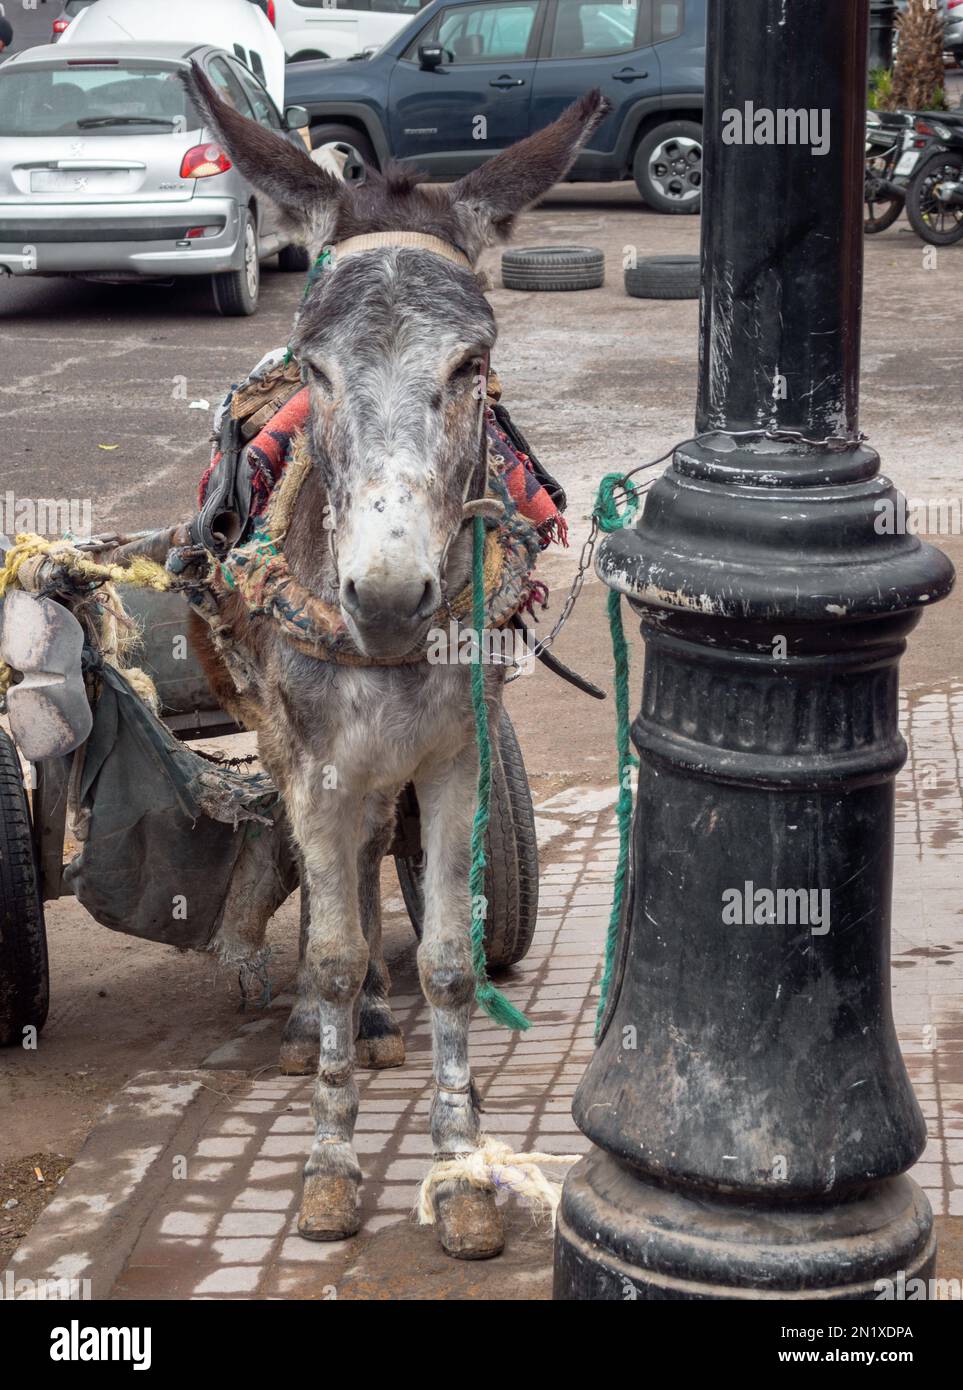 Âne avec chariot attaché dans une rue à Marrakech Maroc Banque D'Images